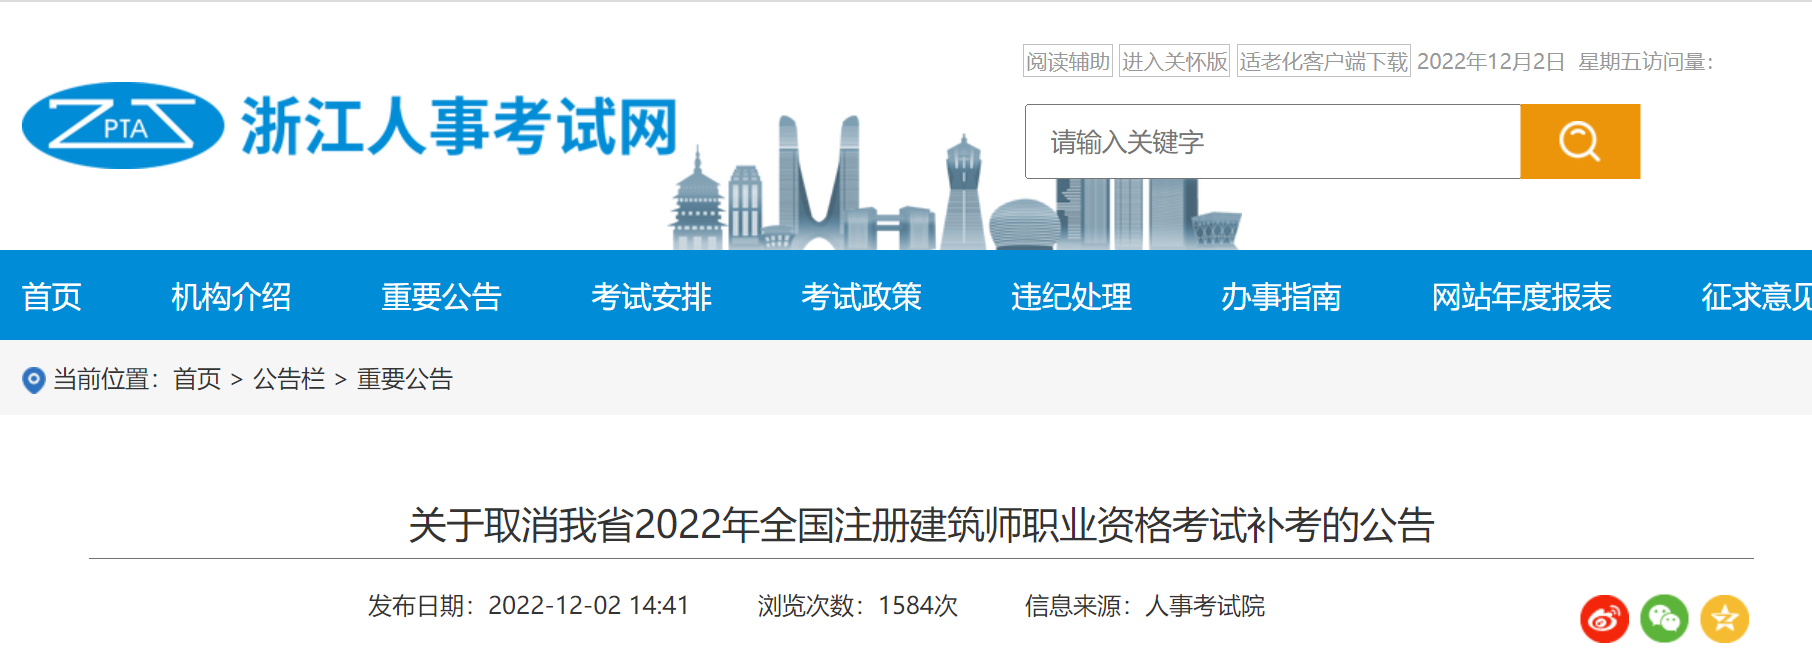 2022年浙江一级建筑师补考取消的通告